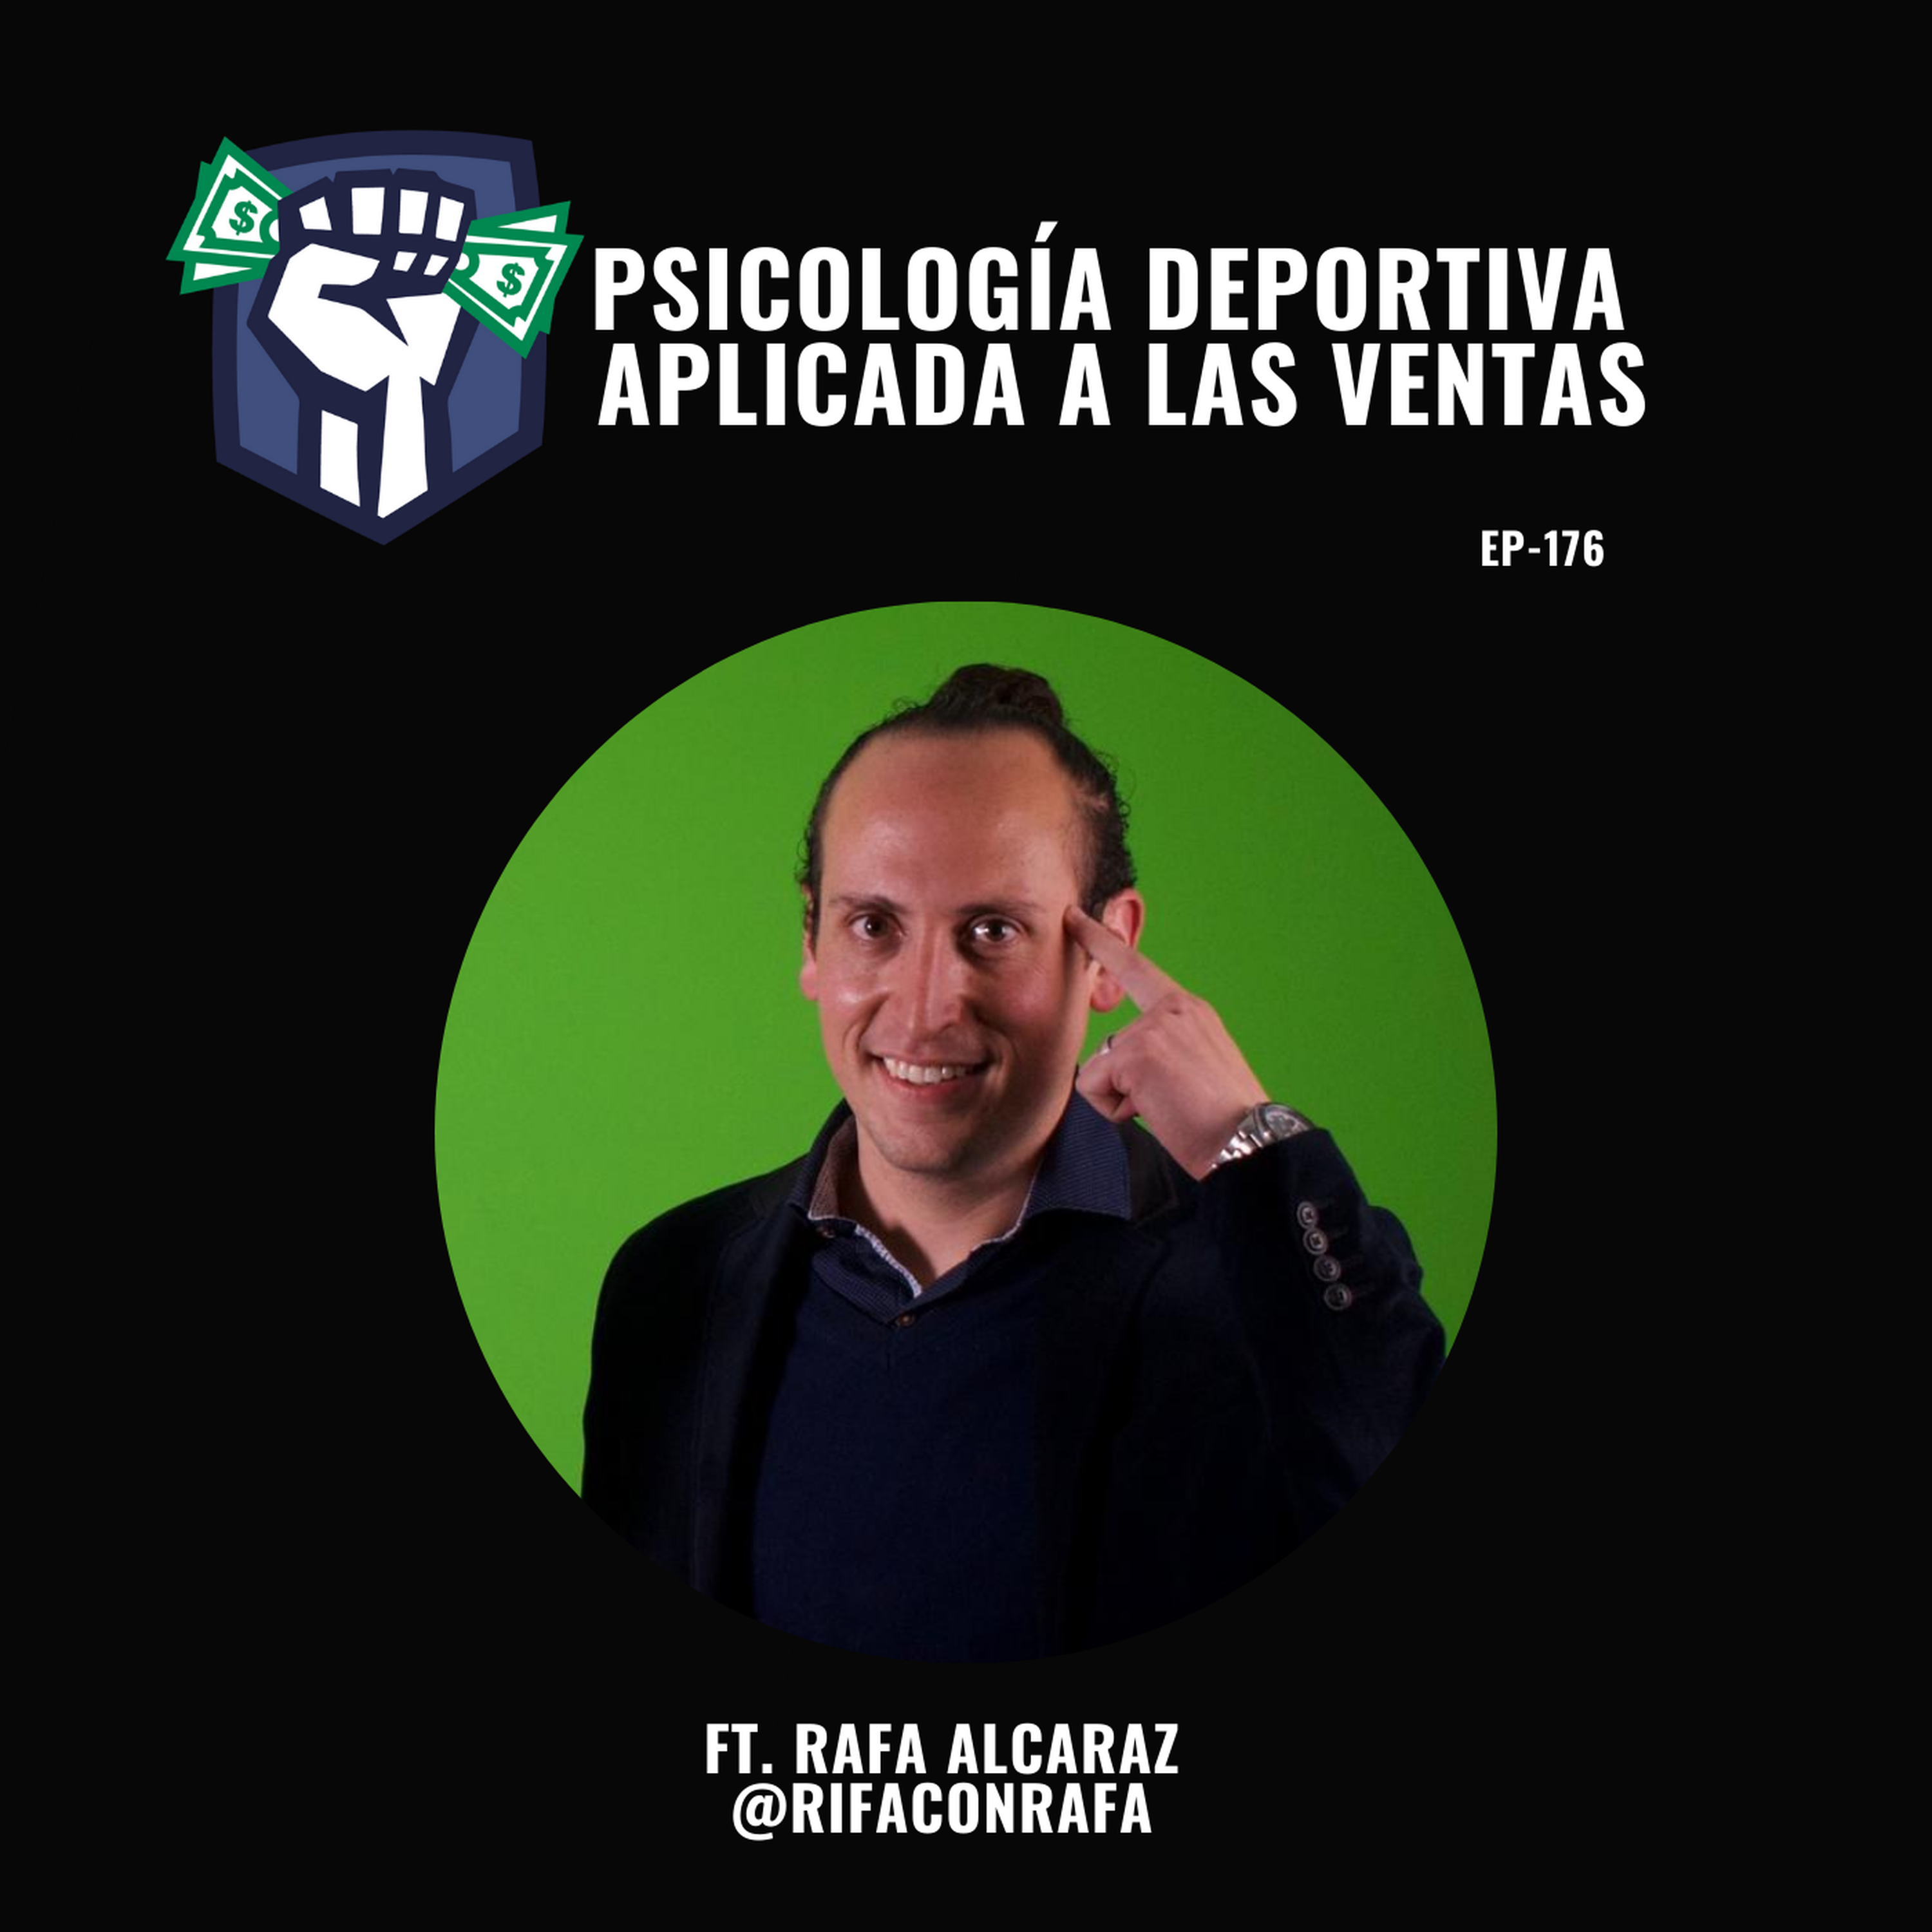 Psicología Deportiva Aplicada a las Ventas (Ft. Rafa Alcaraz) EP-176